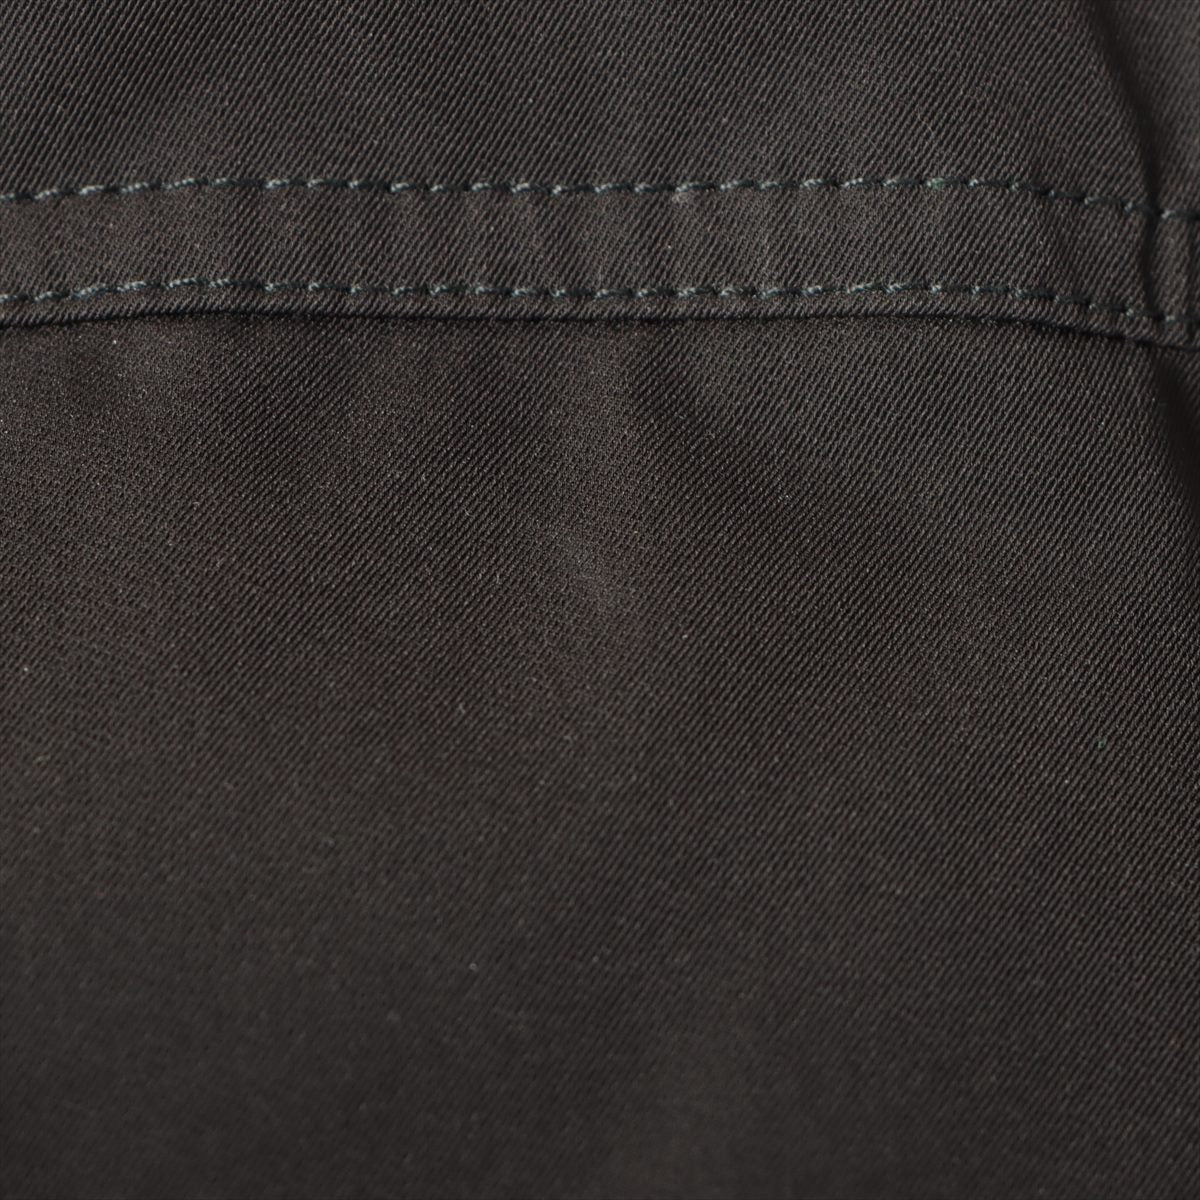 アミ アレクサンドルマテュッシ ポリエステル ダウンジャケット XS-S メンズ ブラック  H21OW200.299 袖ロゴ